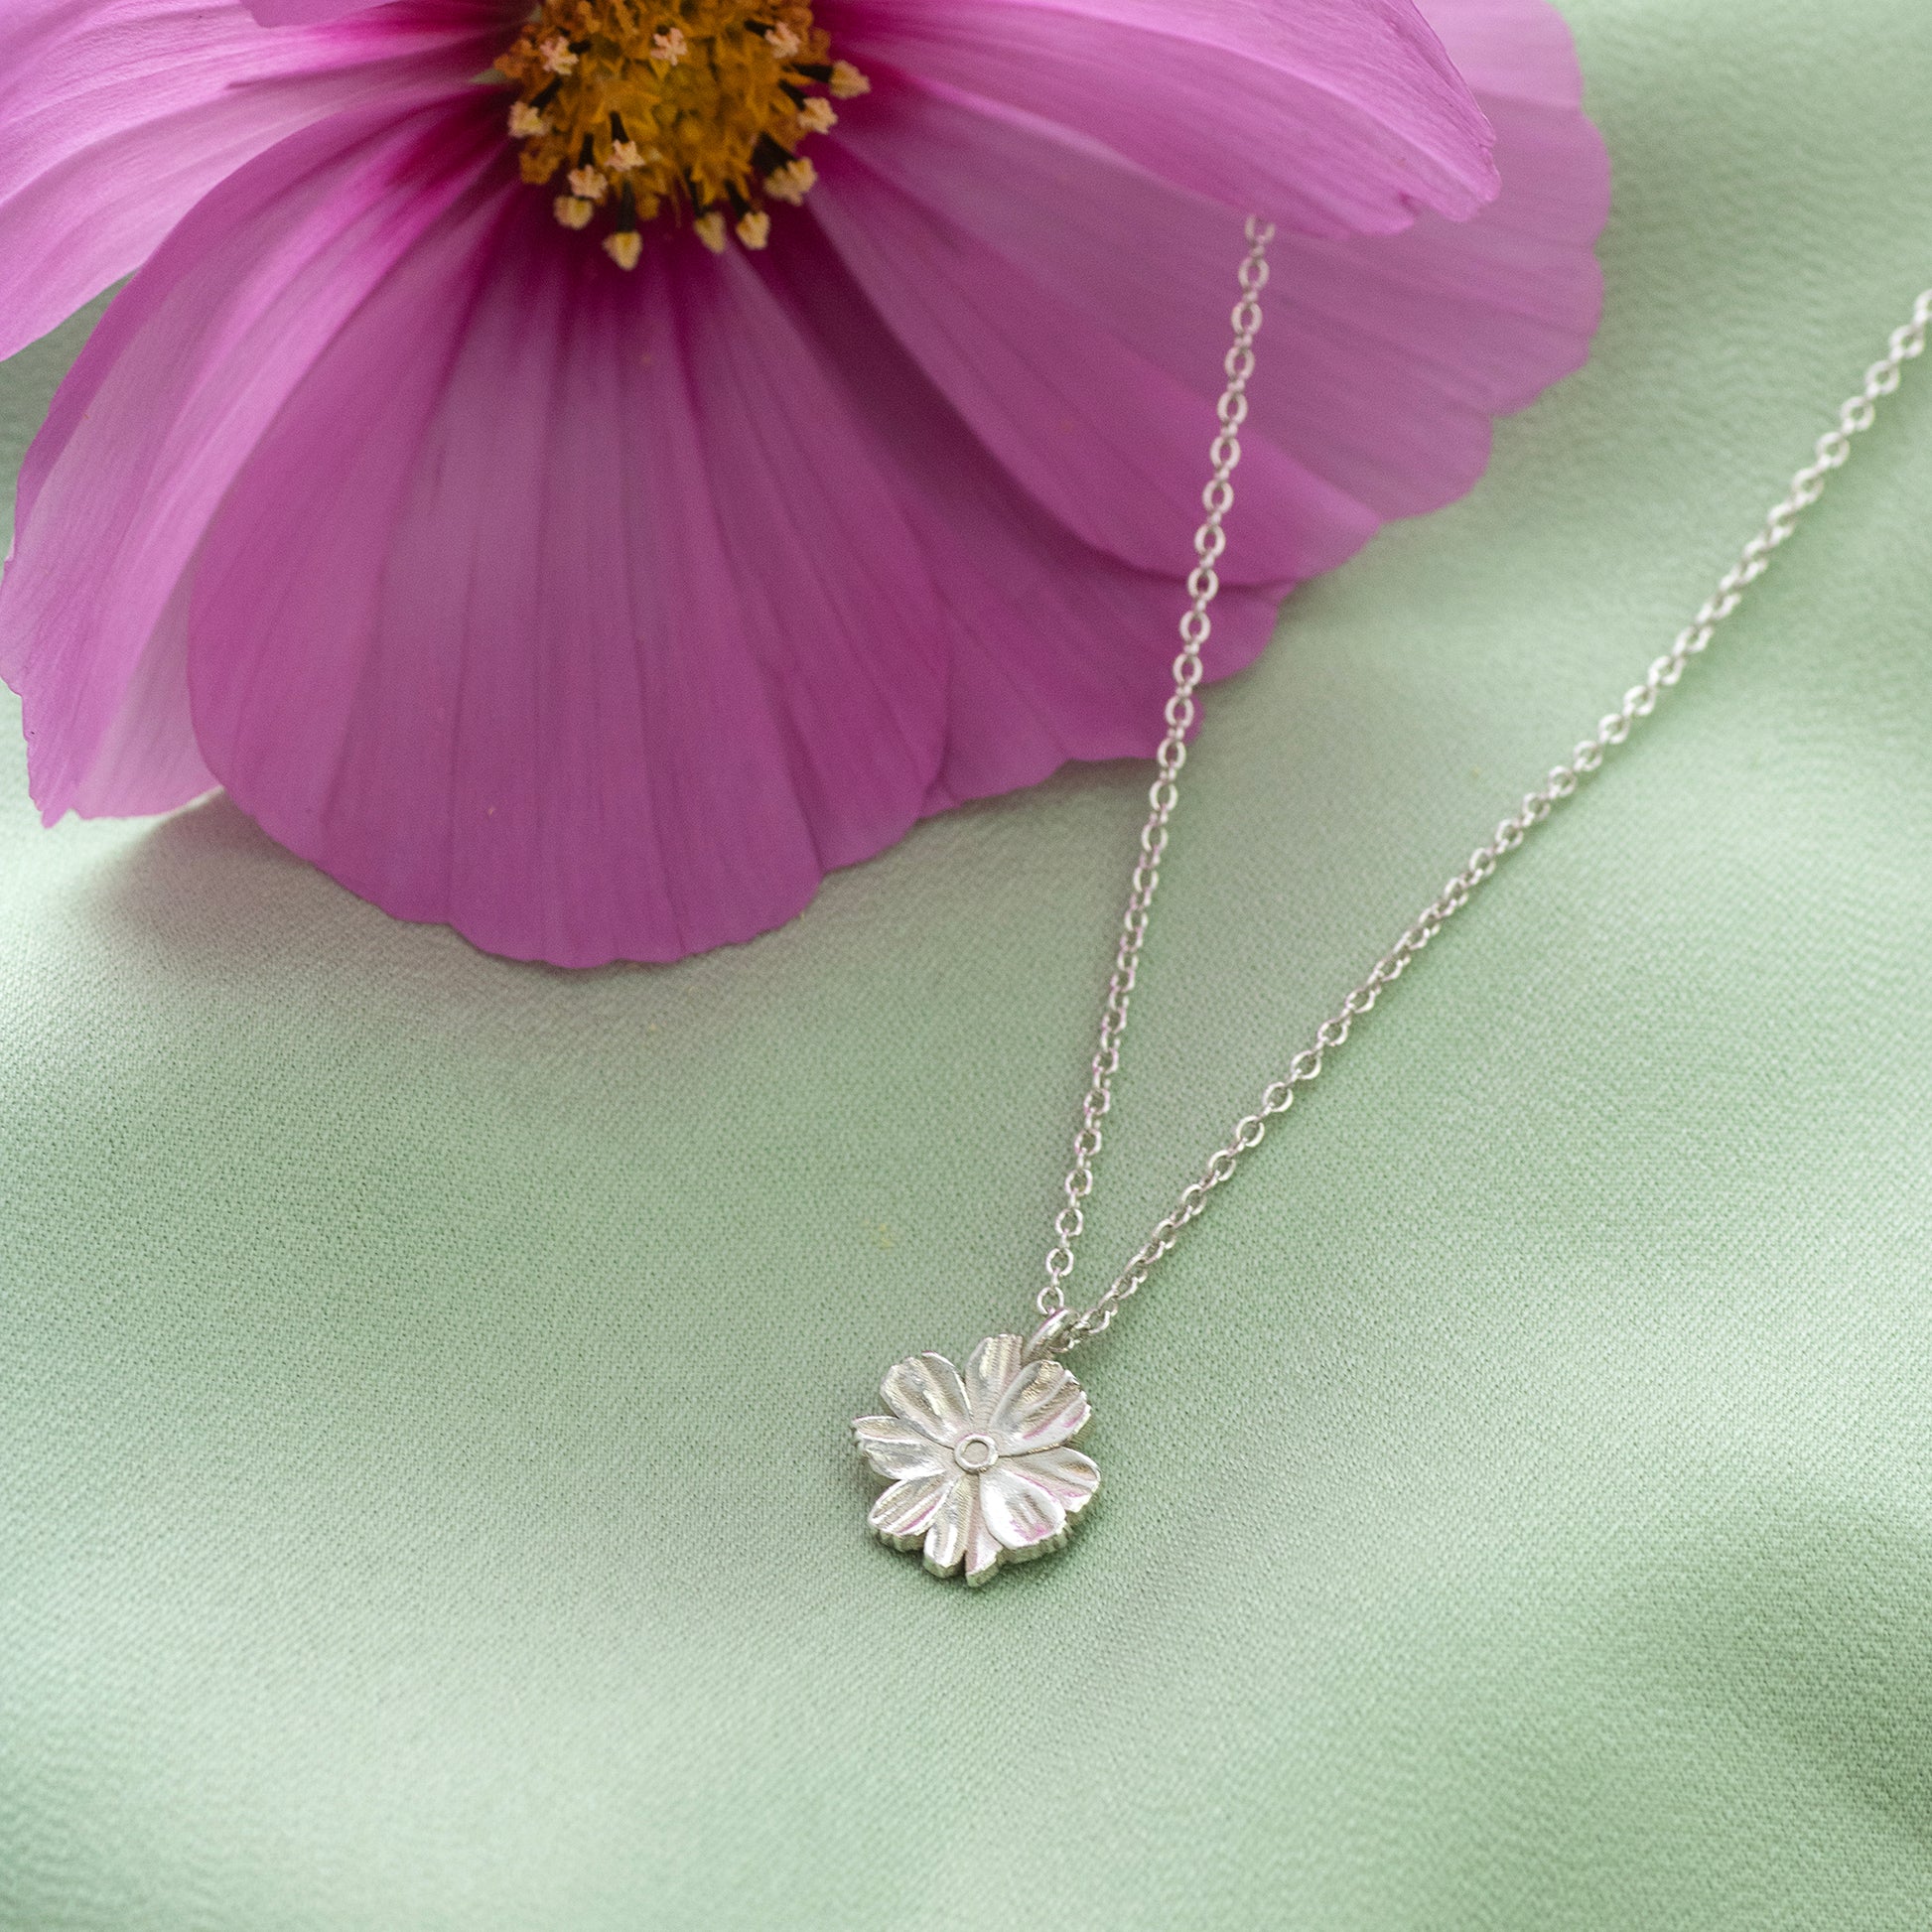 October Birth Flower Necklace - Cosmos - Silver